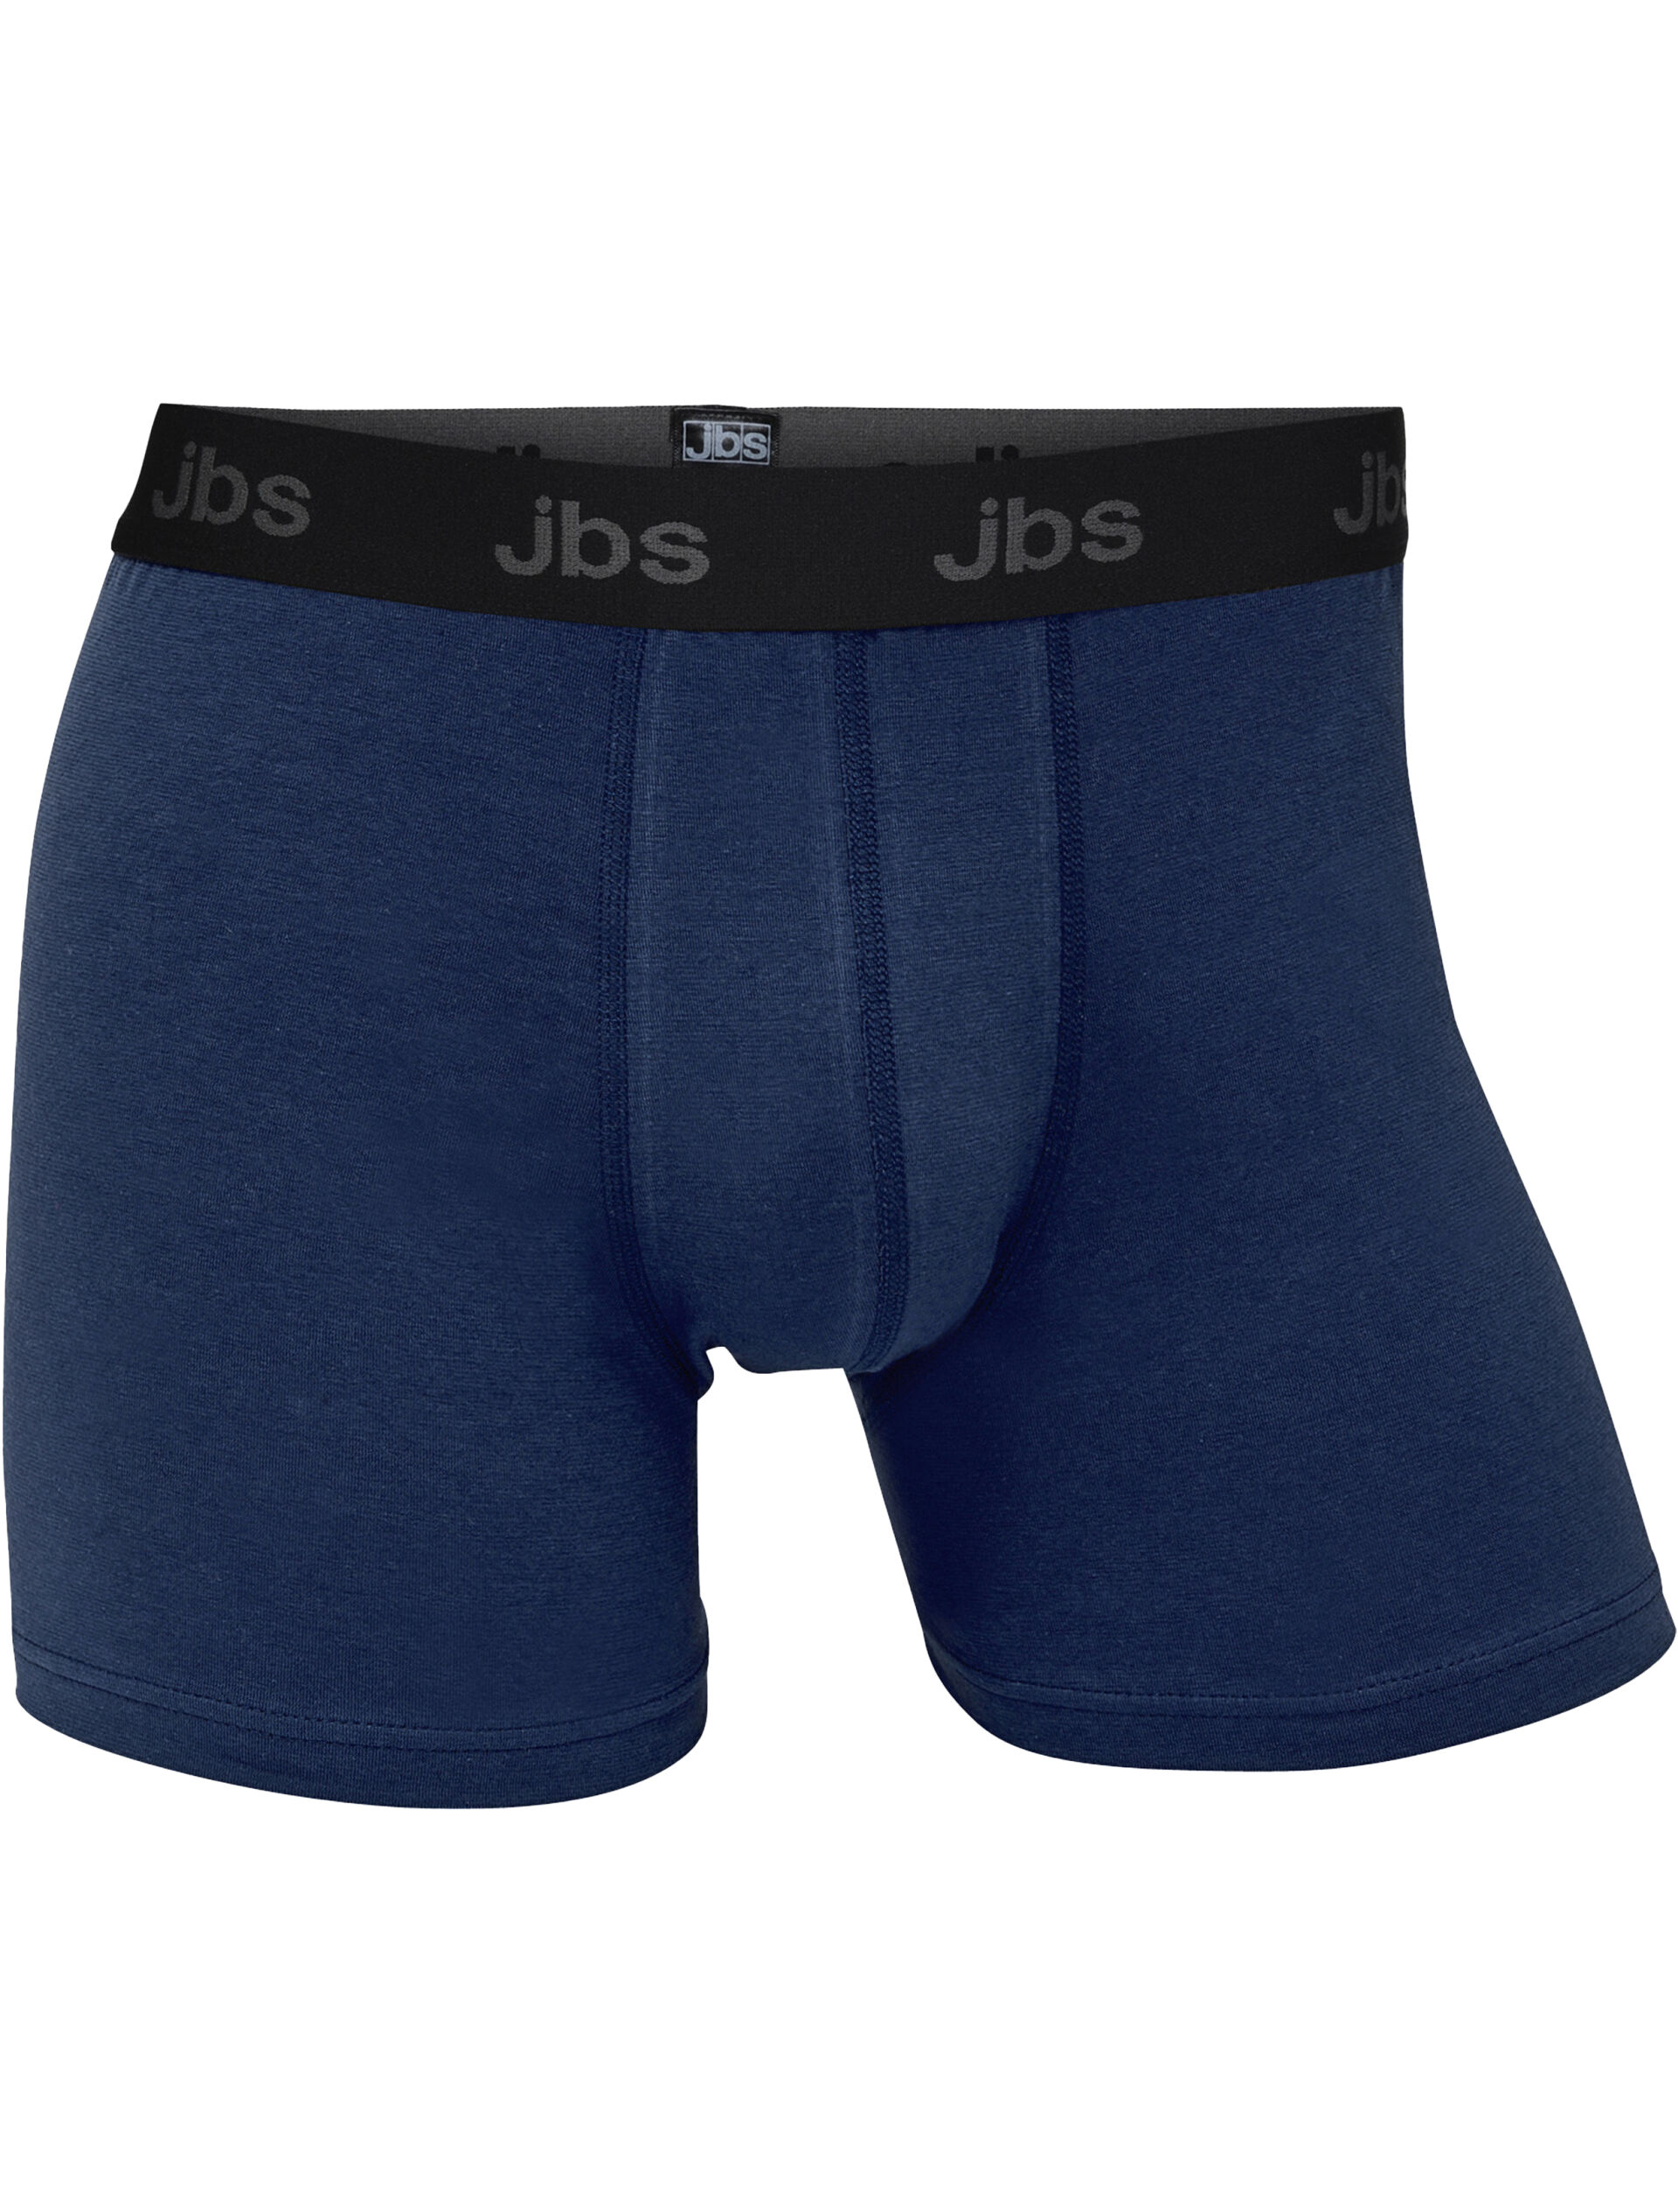 JBS  Tights 90-900059